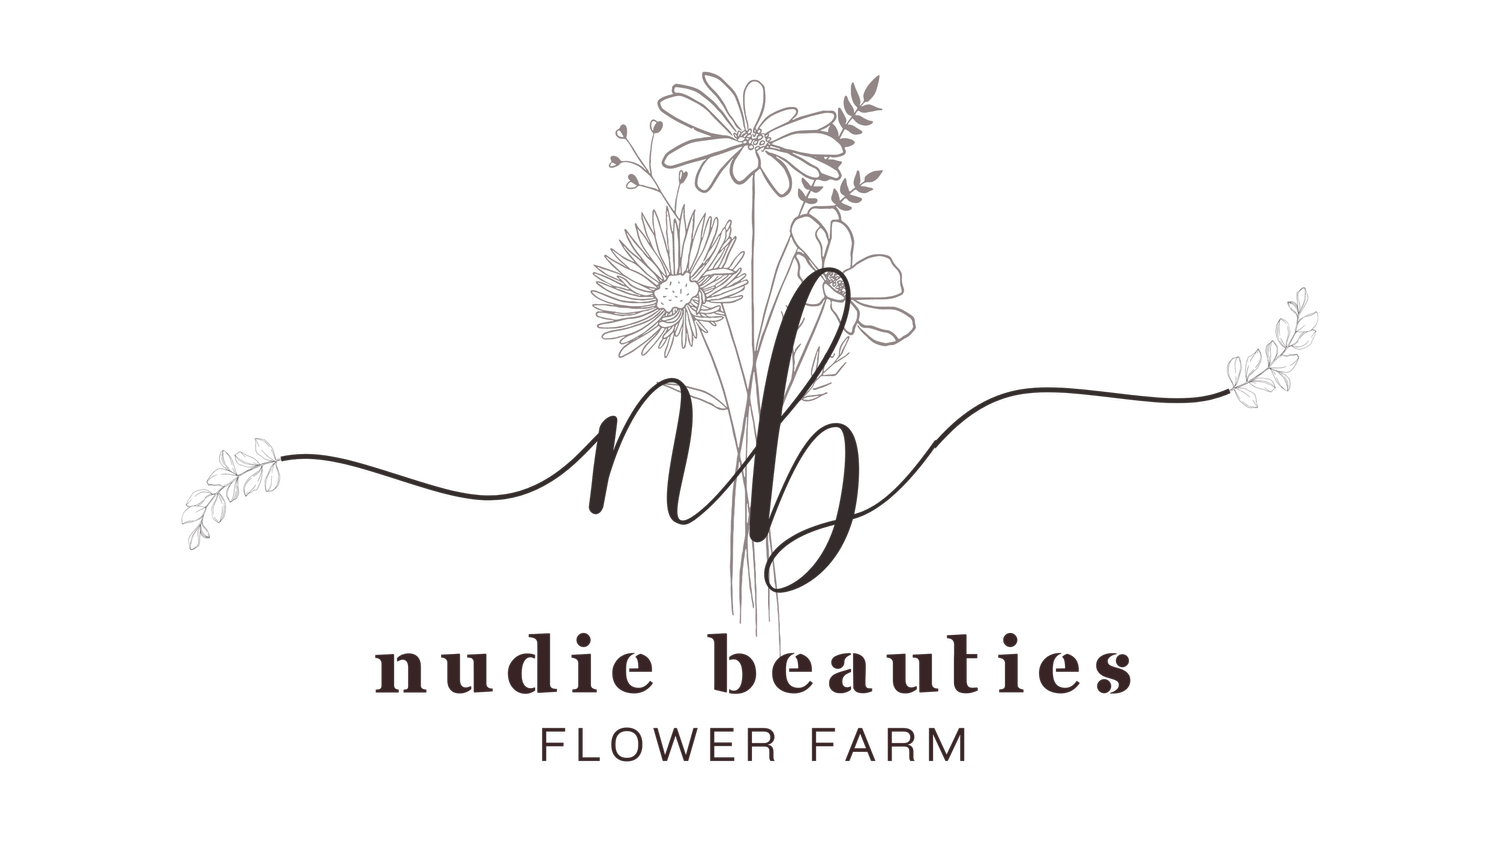 Nudie Beauties Flower Farm